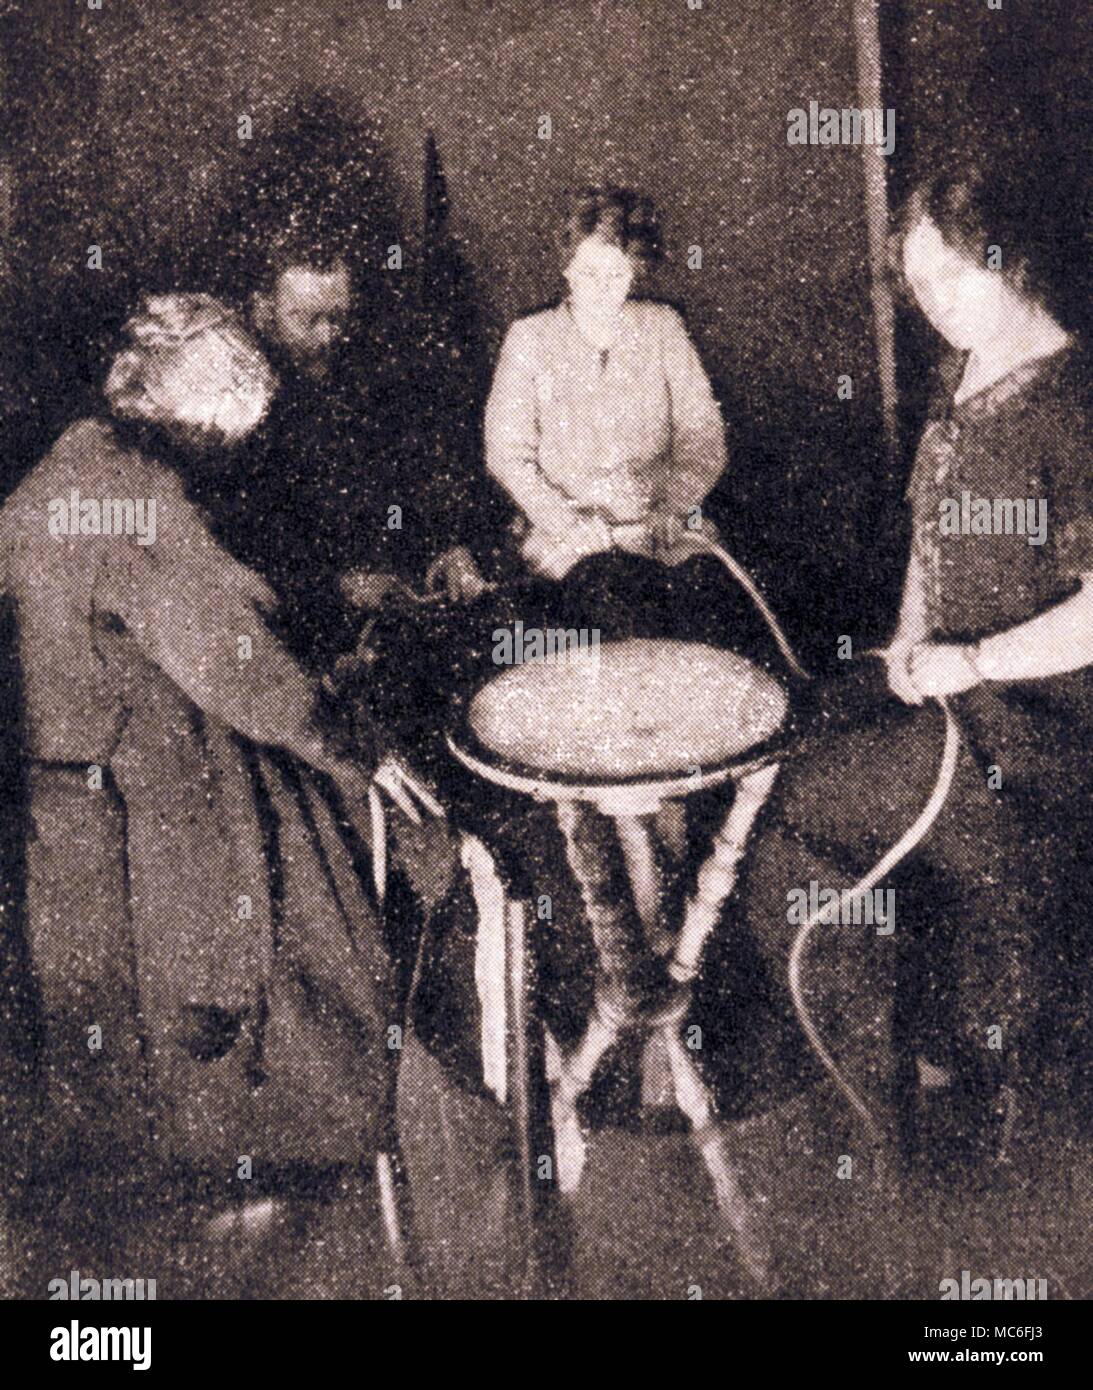 LEVITATION Flash Foto während der Warrick-Deanne seances am 21. April 1925 berücksichtigt. Der Tisch war Levitierten dramatisch wie das Bild aufgenommen wurde Stockfoto